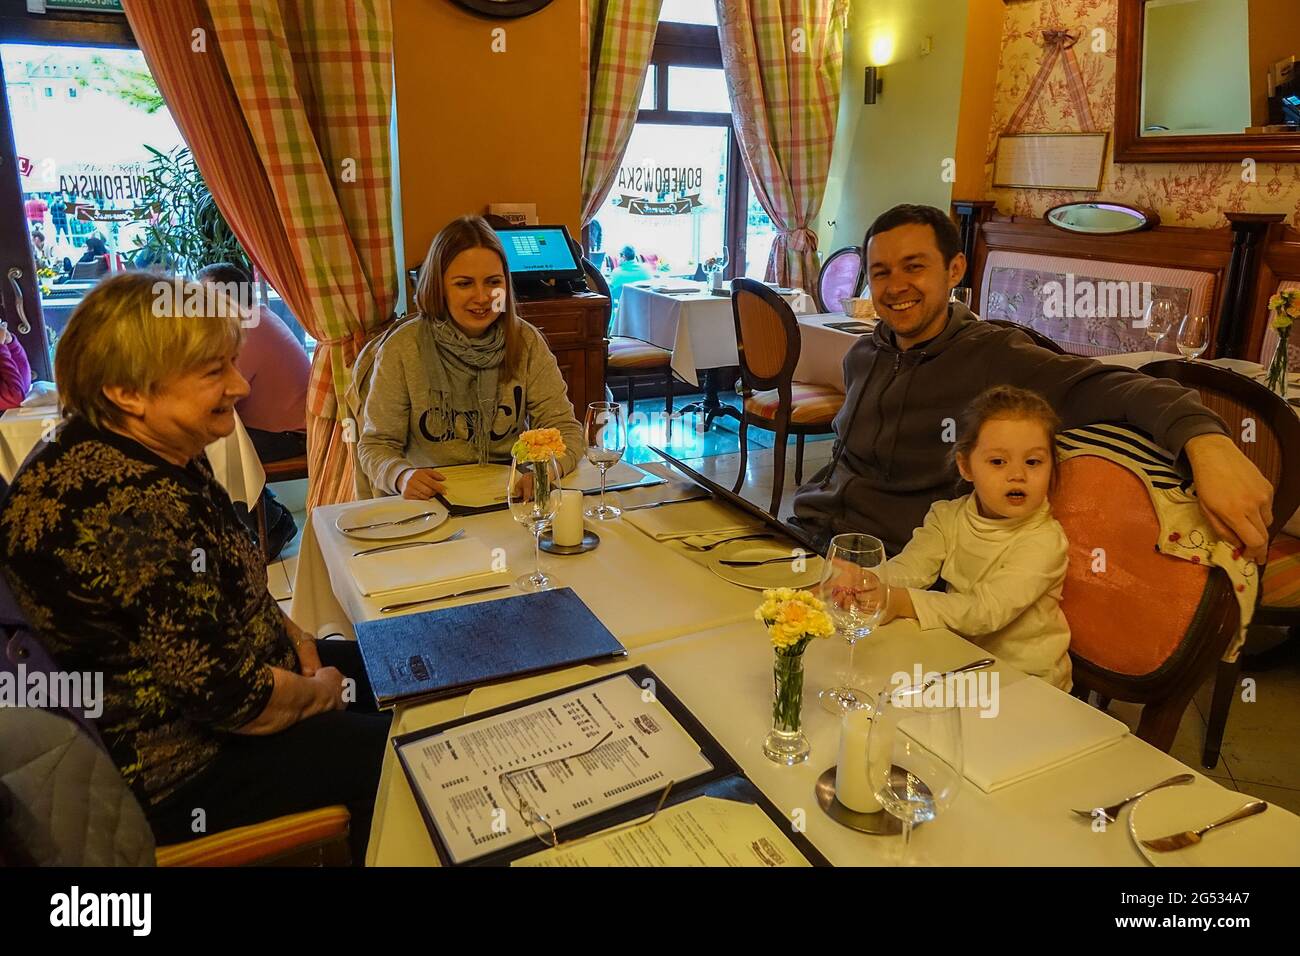 Family restaurant outing in Krakow Stock Photo